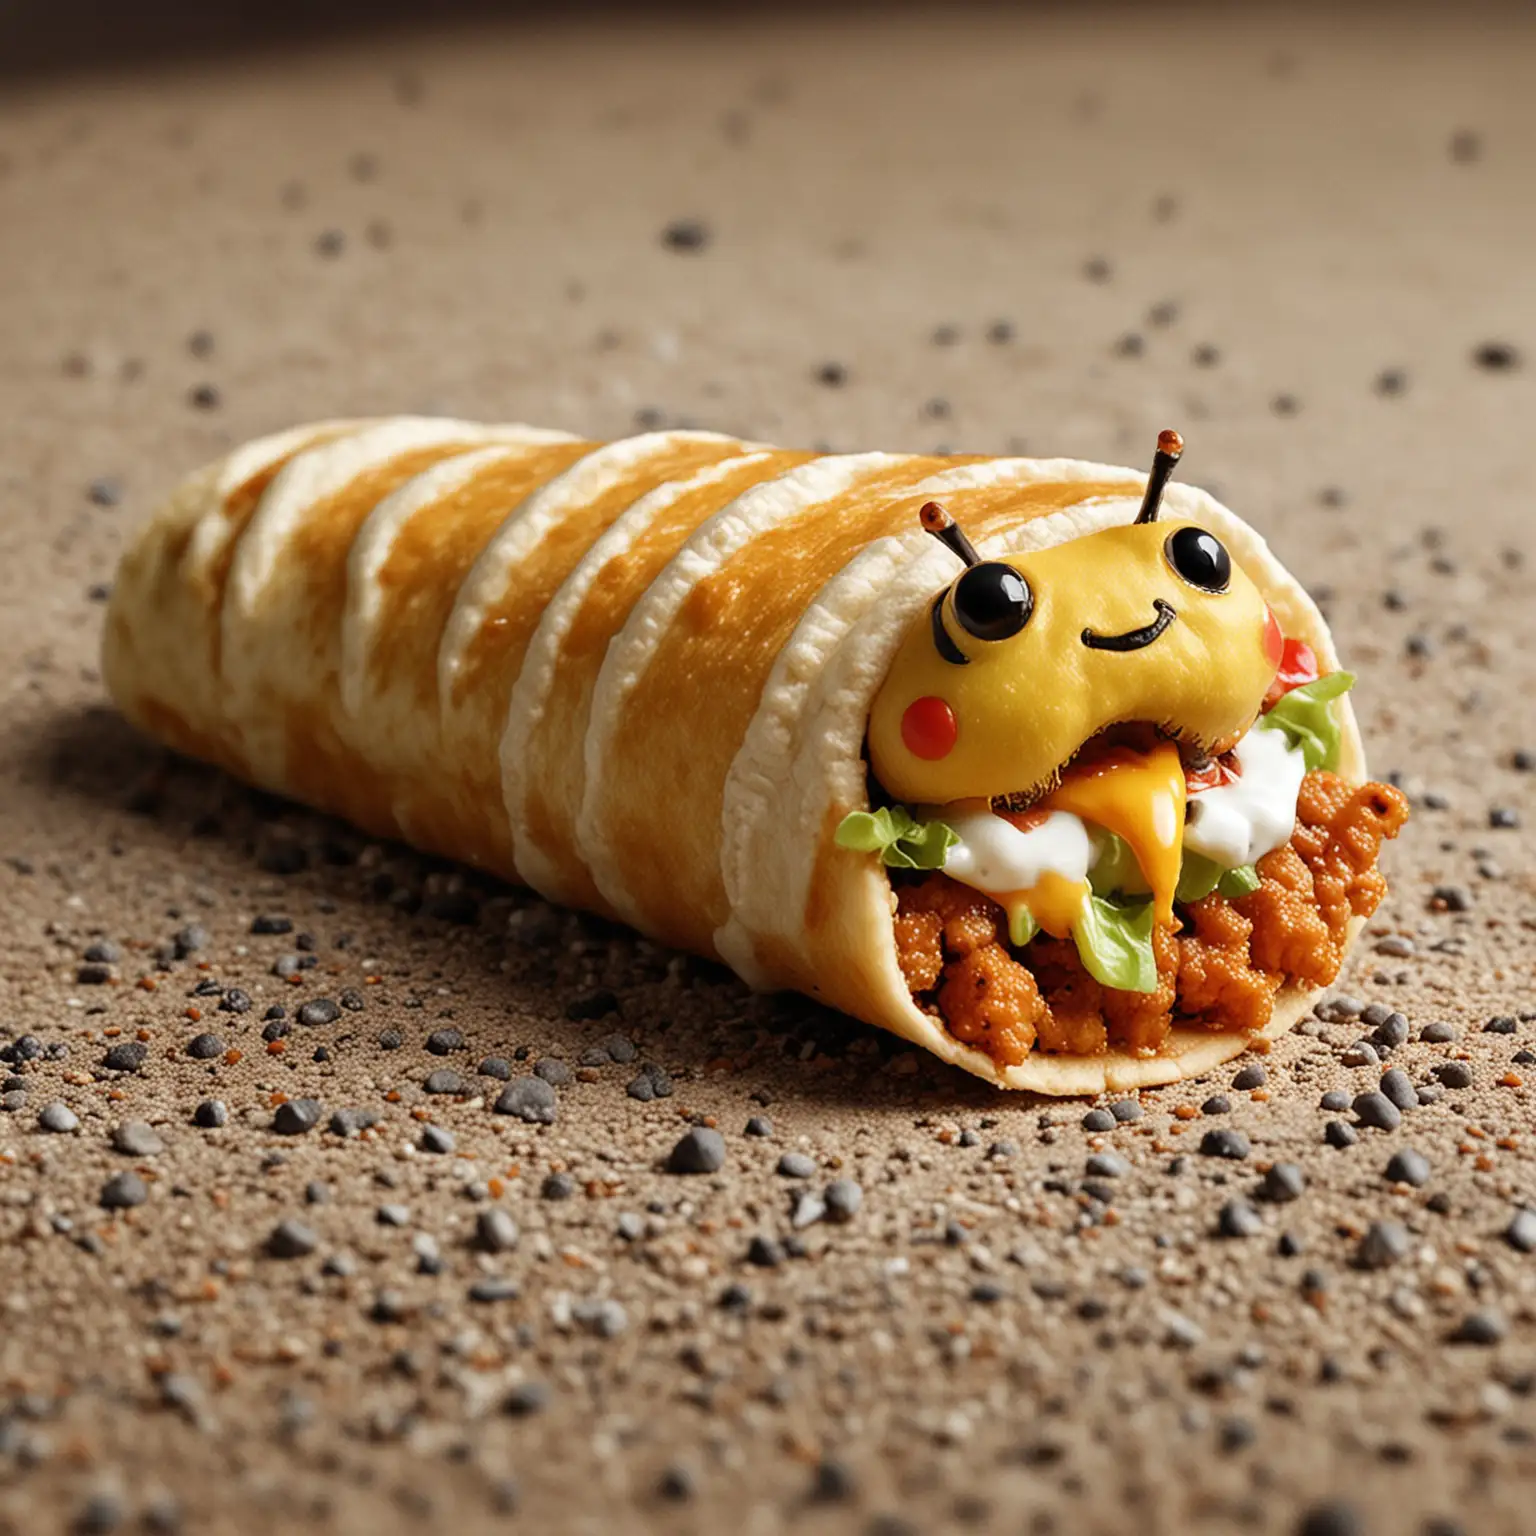 Caterpillar eating taco bell, cute